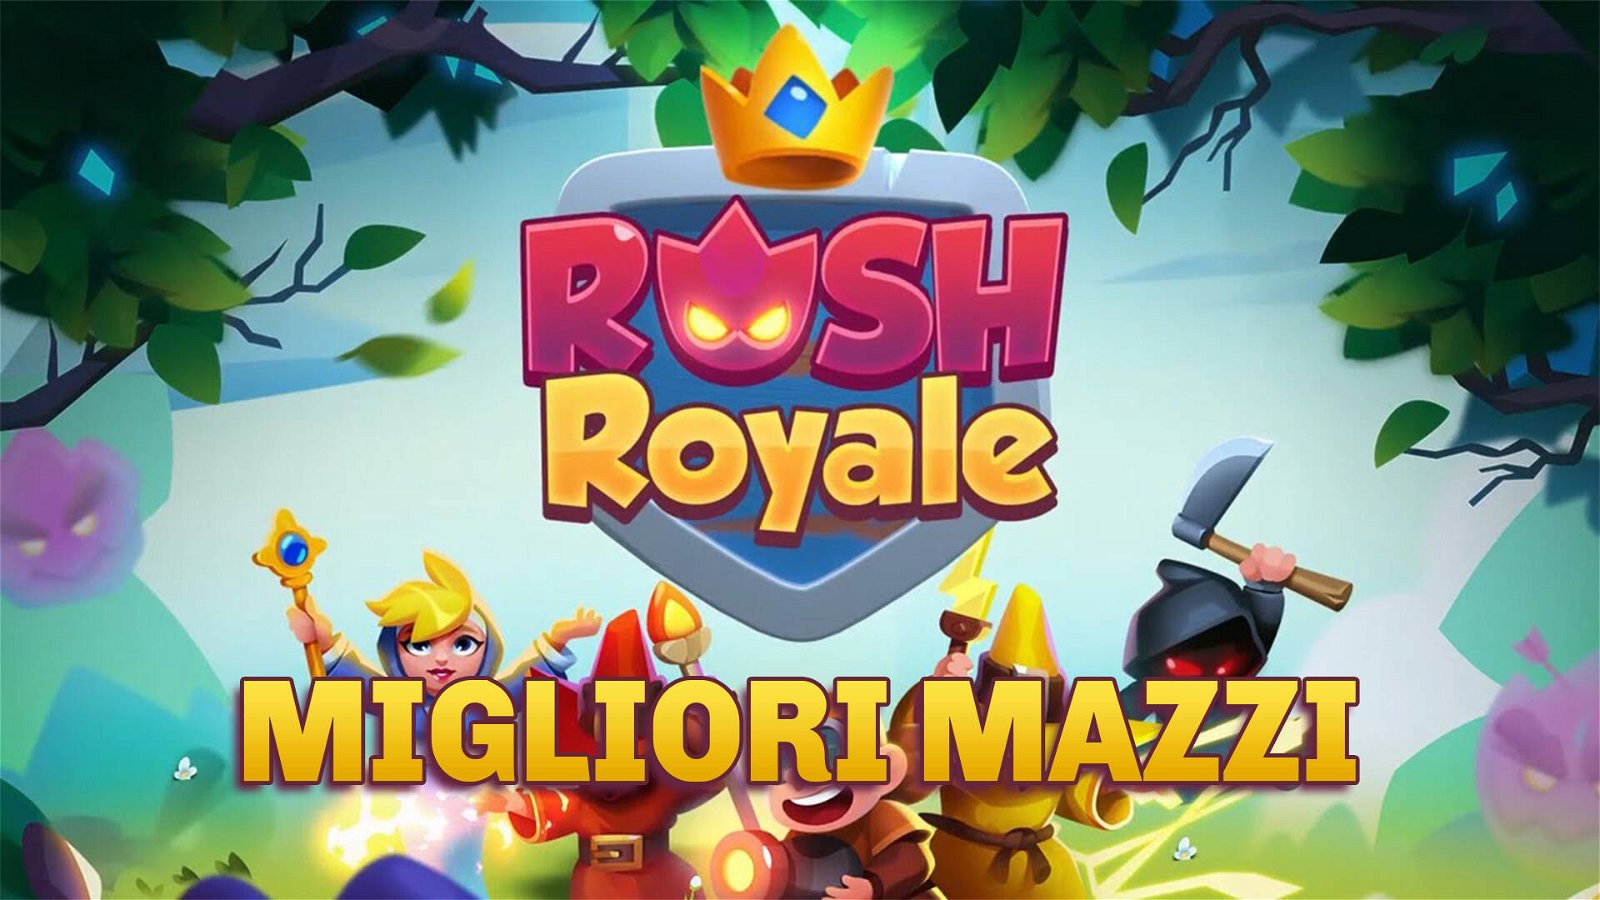 Immagine di Rush Royale | I migliori mazzi per vincere